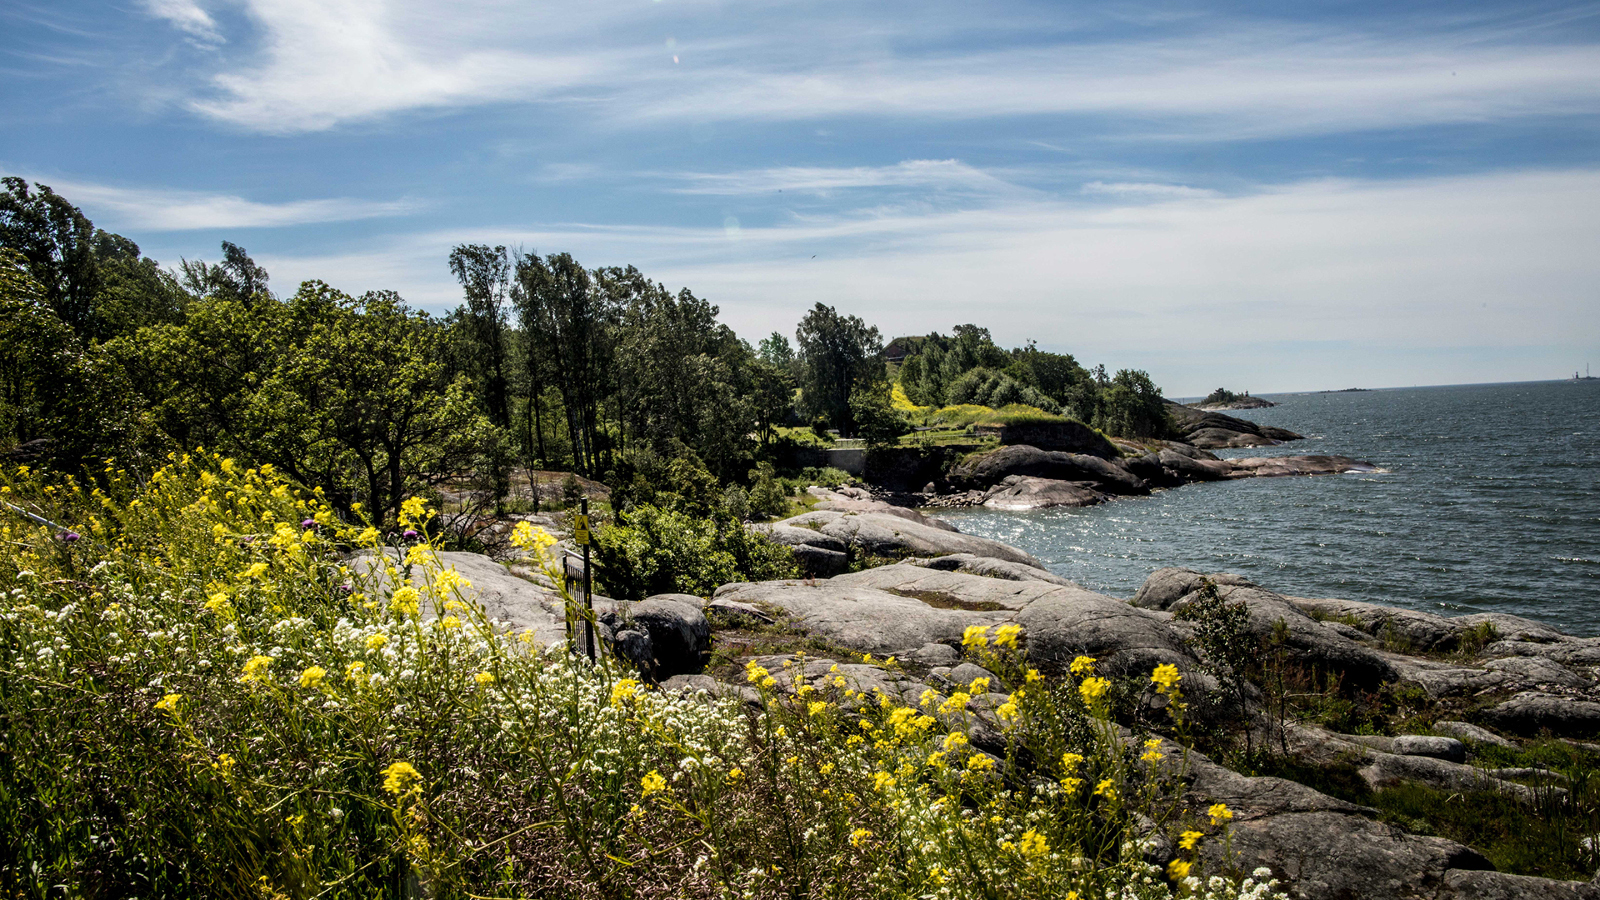 Kuvassa on Vallisaaren rantaa, joka on jonkin verran kivikkoinen ja etualalla on ruohikossa keltaisia kukkia.